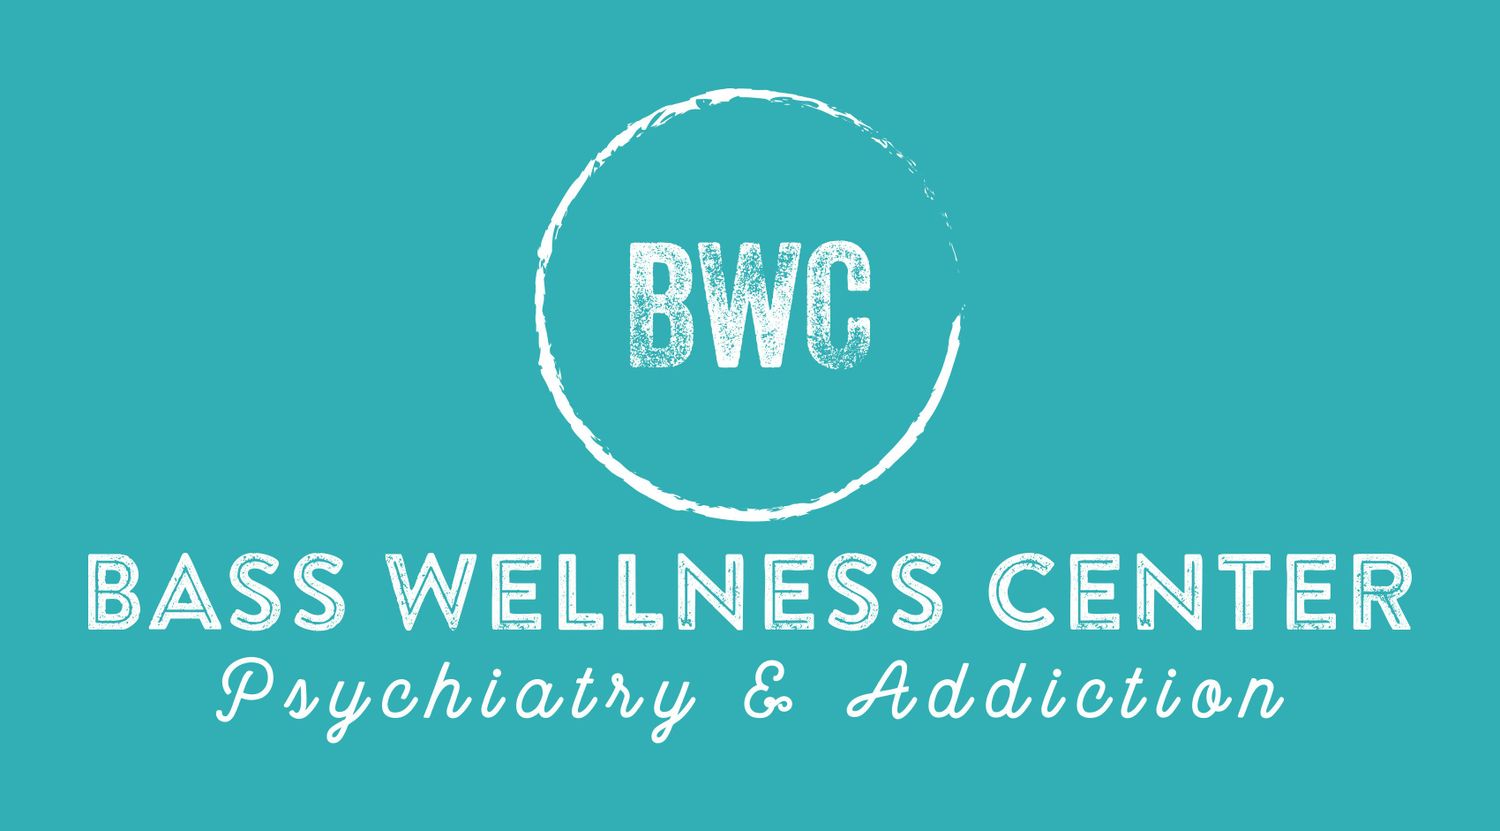 Gallery Photo of Bass Wellness Center